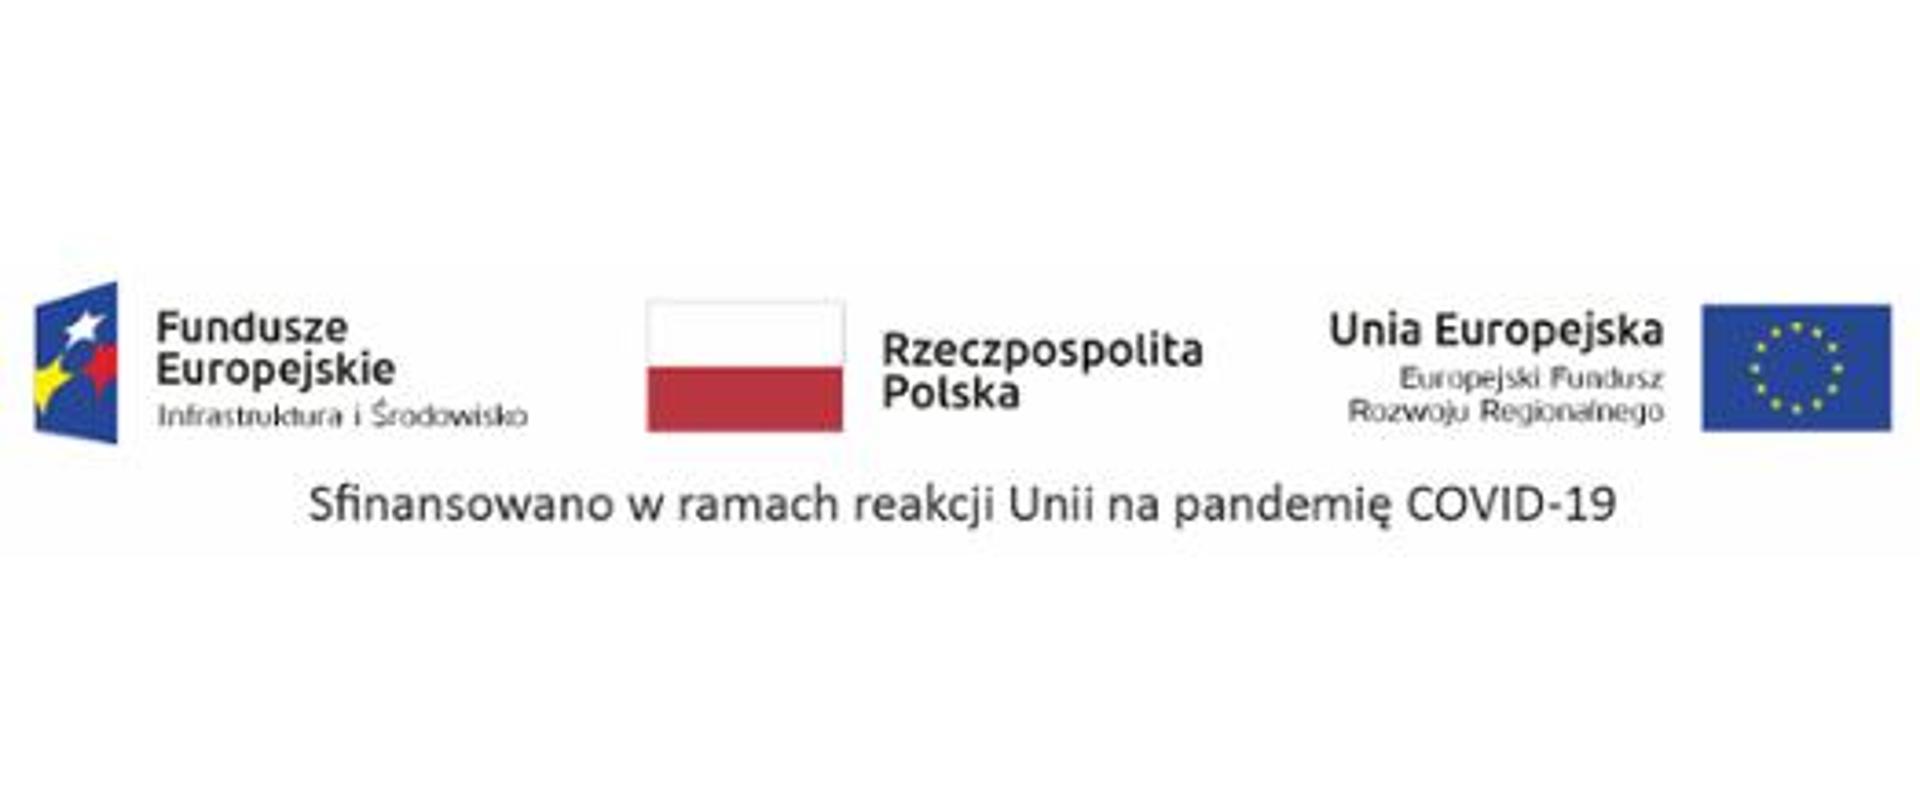 Baner ze znakami: Fundusze Europejskie Infrastruktura i Środowisko, flaga Rzeczpospolita Polska i znak Unia Europejska Europejski Fundusz Rozwoju Regionalnego, dopisanym pod zestawem logo zwrot: „Sfinansowano w ramach reakcji Unii na pandemię COVID-19”.